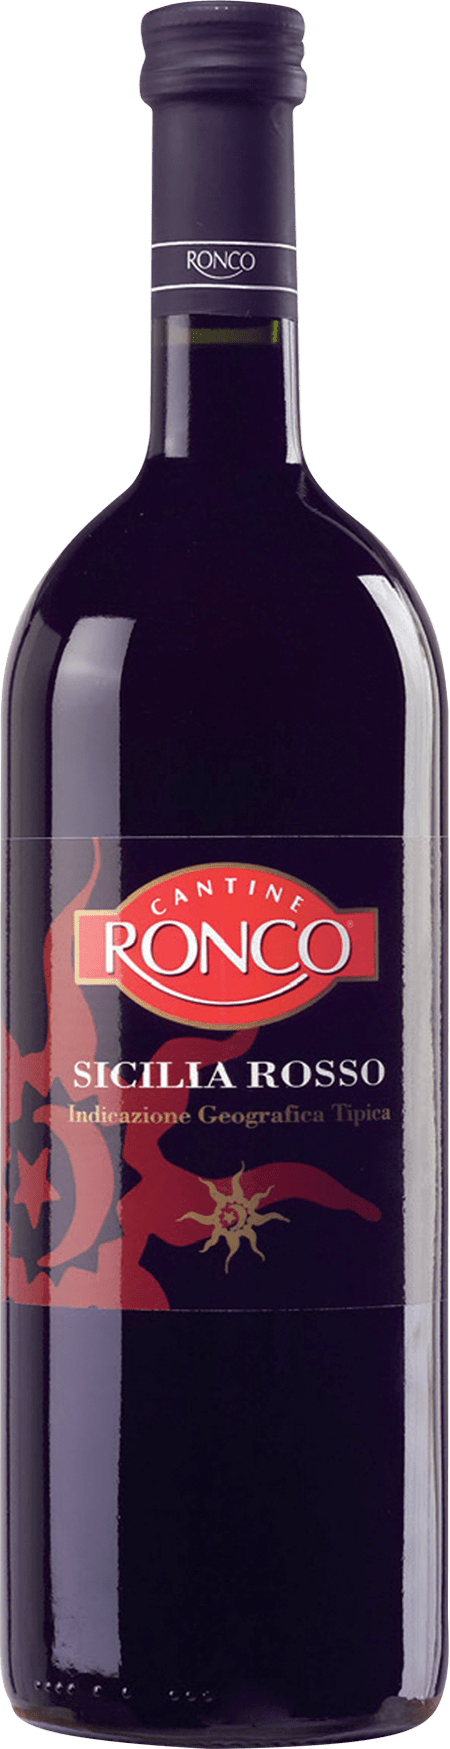 Ronco Sicilia Rosso IGT Terre Cevico